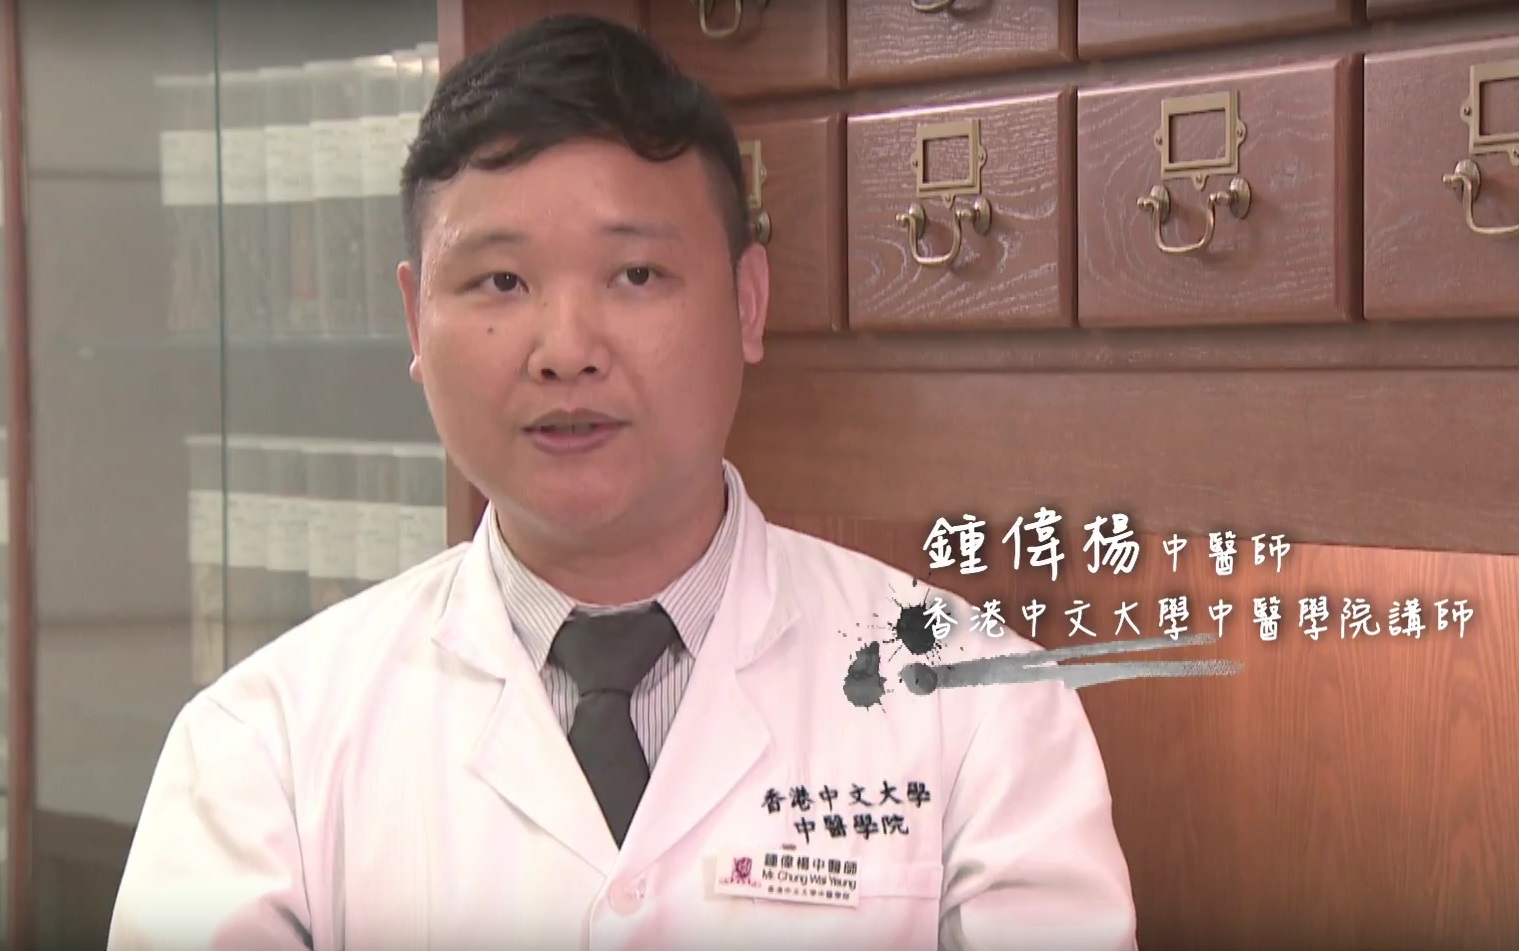 中大中医学院钟伟杨医师会教大家一些穴位按摩方法。